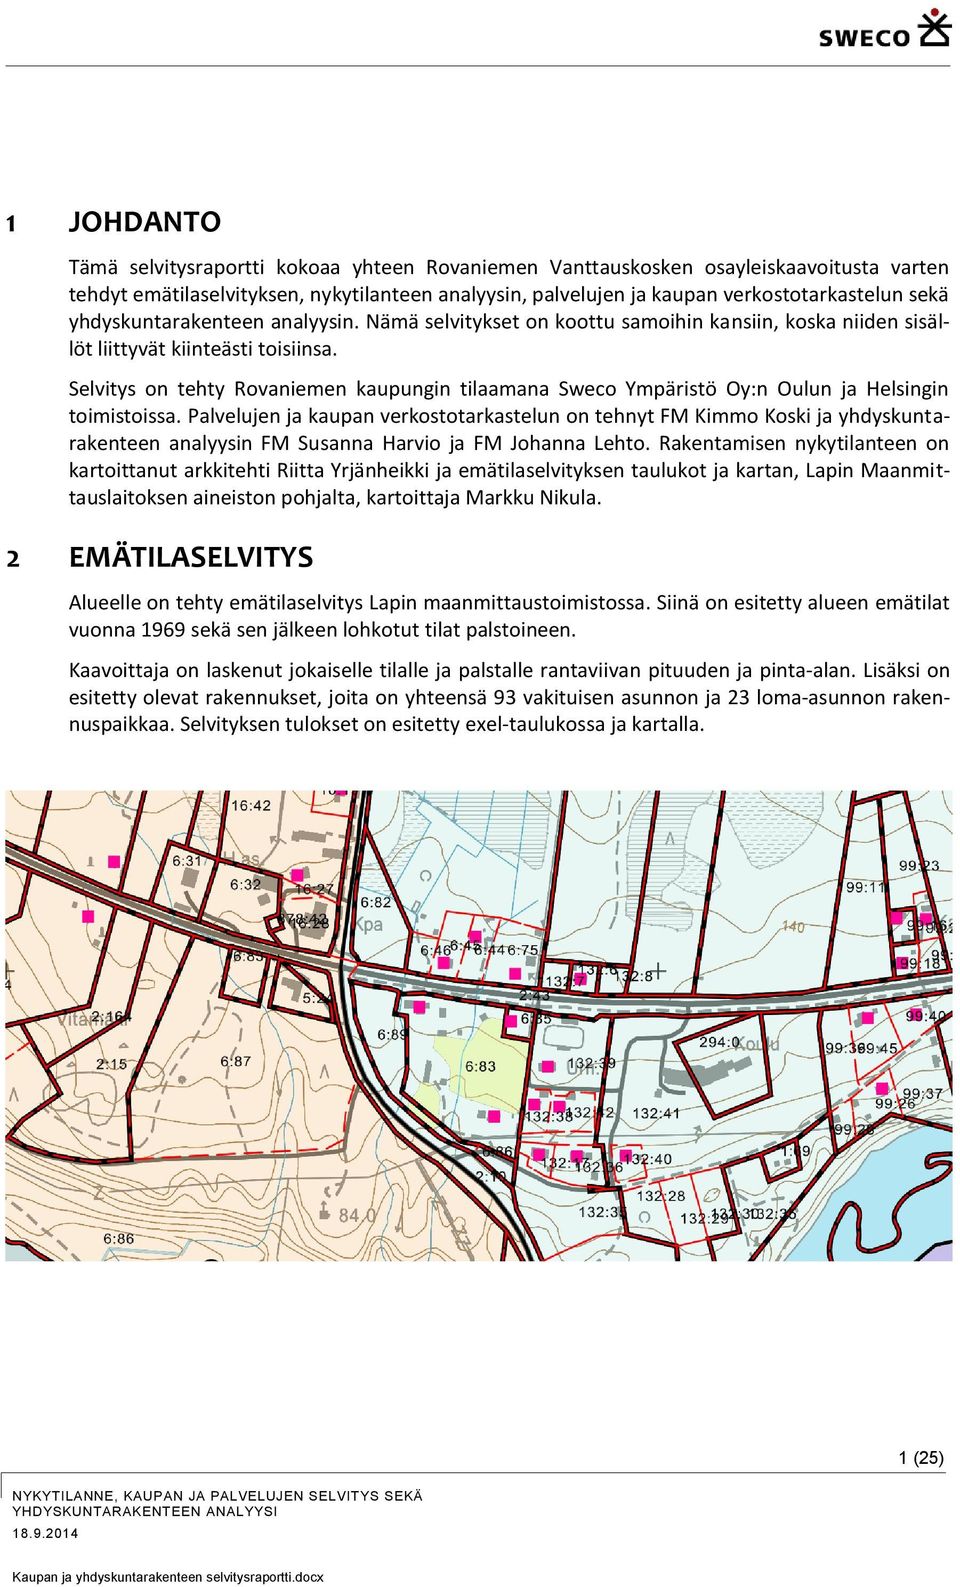 Selvitys on tehty Rovaniemen kaupungin tilaamana Sweco Ympäristö Oy:n Oulun ja Helsingin toimistoissa.